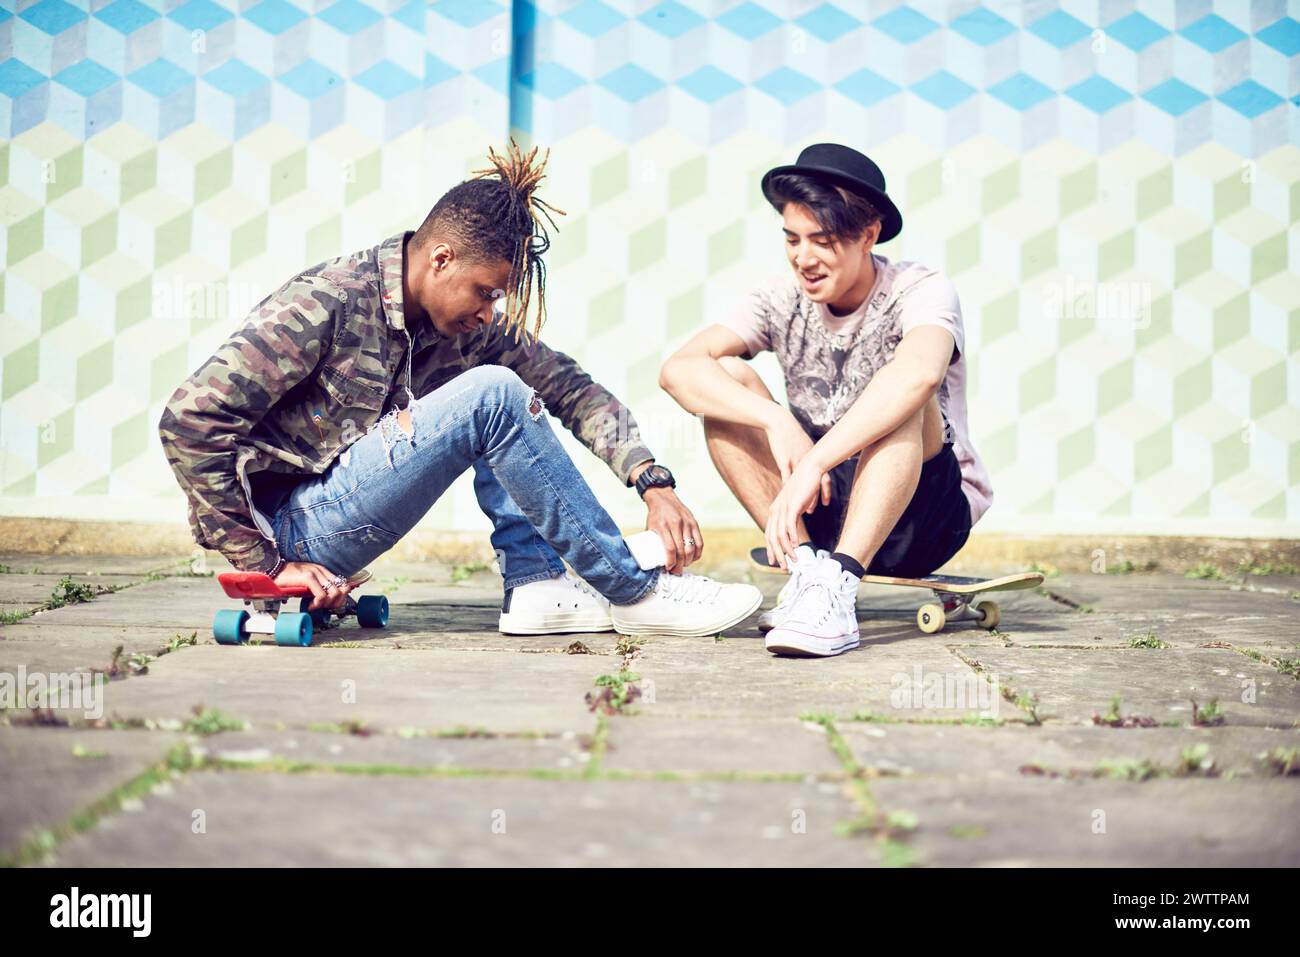 Zwei Personen sitzen und interagieren mit Skateboards Stockfoto